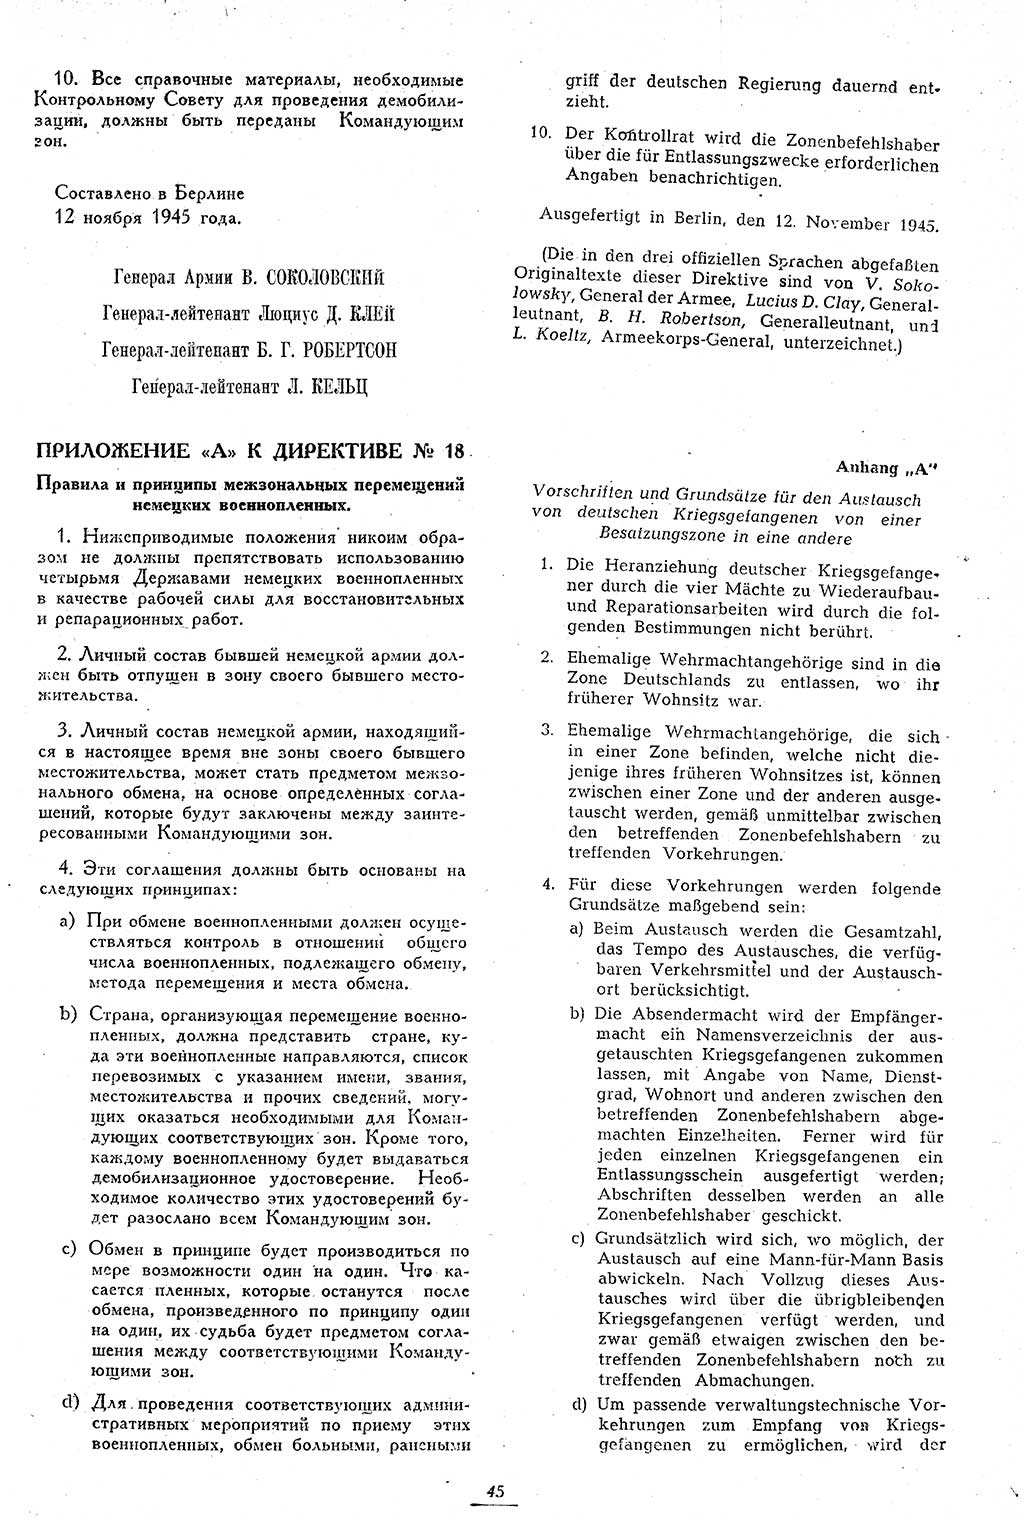 Amtsblatt des Kontrollrats (ABlKR) in Deutschland 1946, Seite 45/2 (ABlKR Dtl. 1946, S. 45/2)